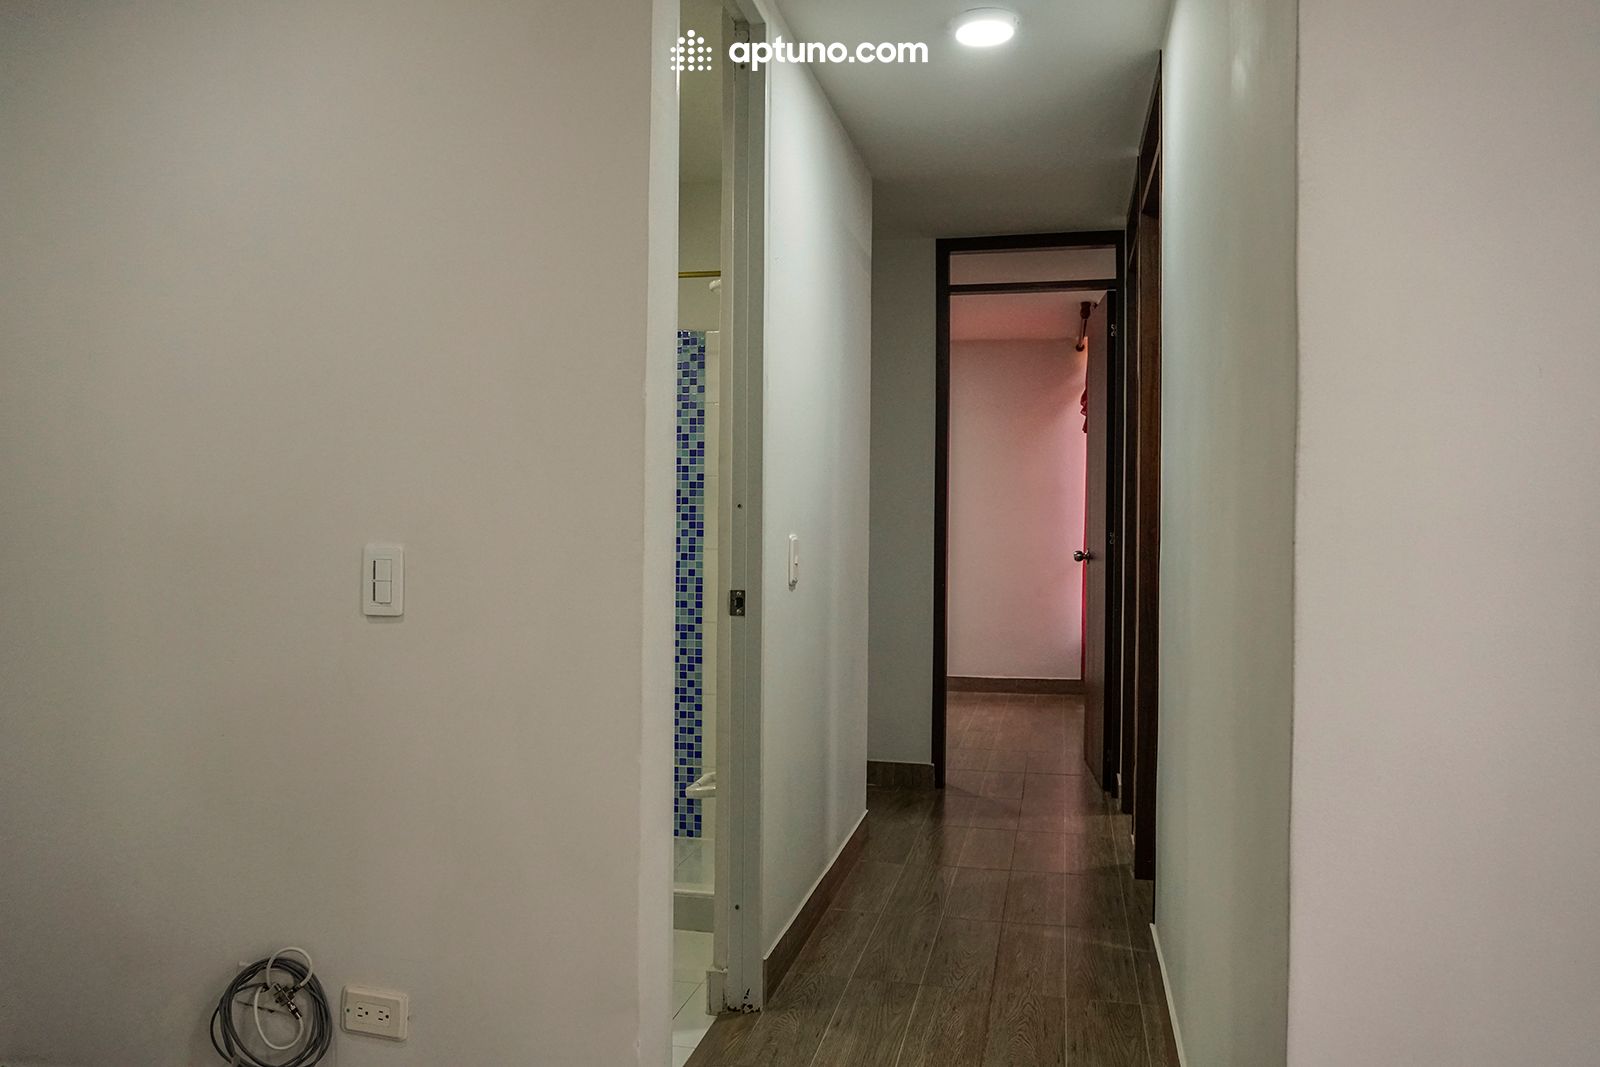 Apartamento en arriendo Mosquera 60 m² - $ 950.000